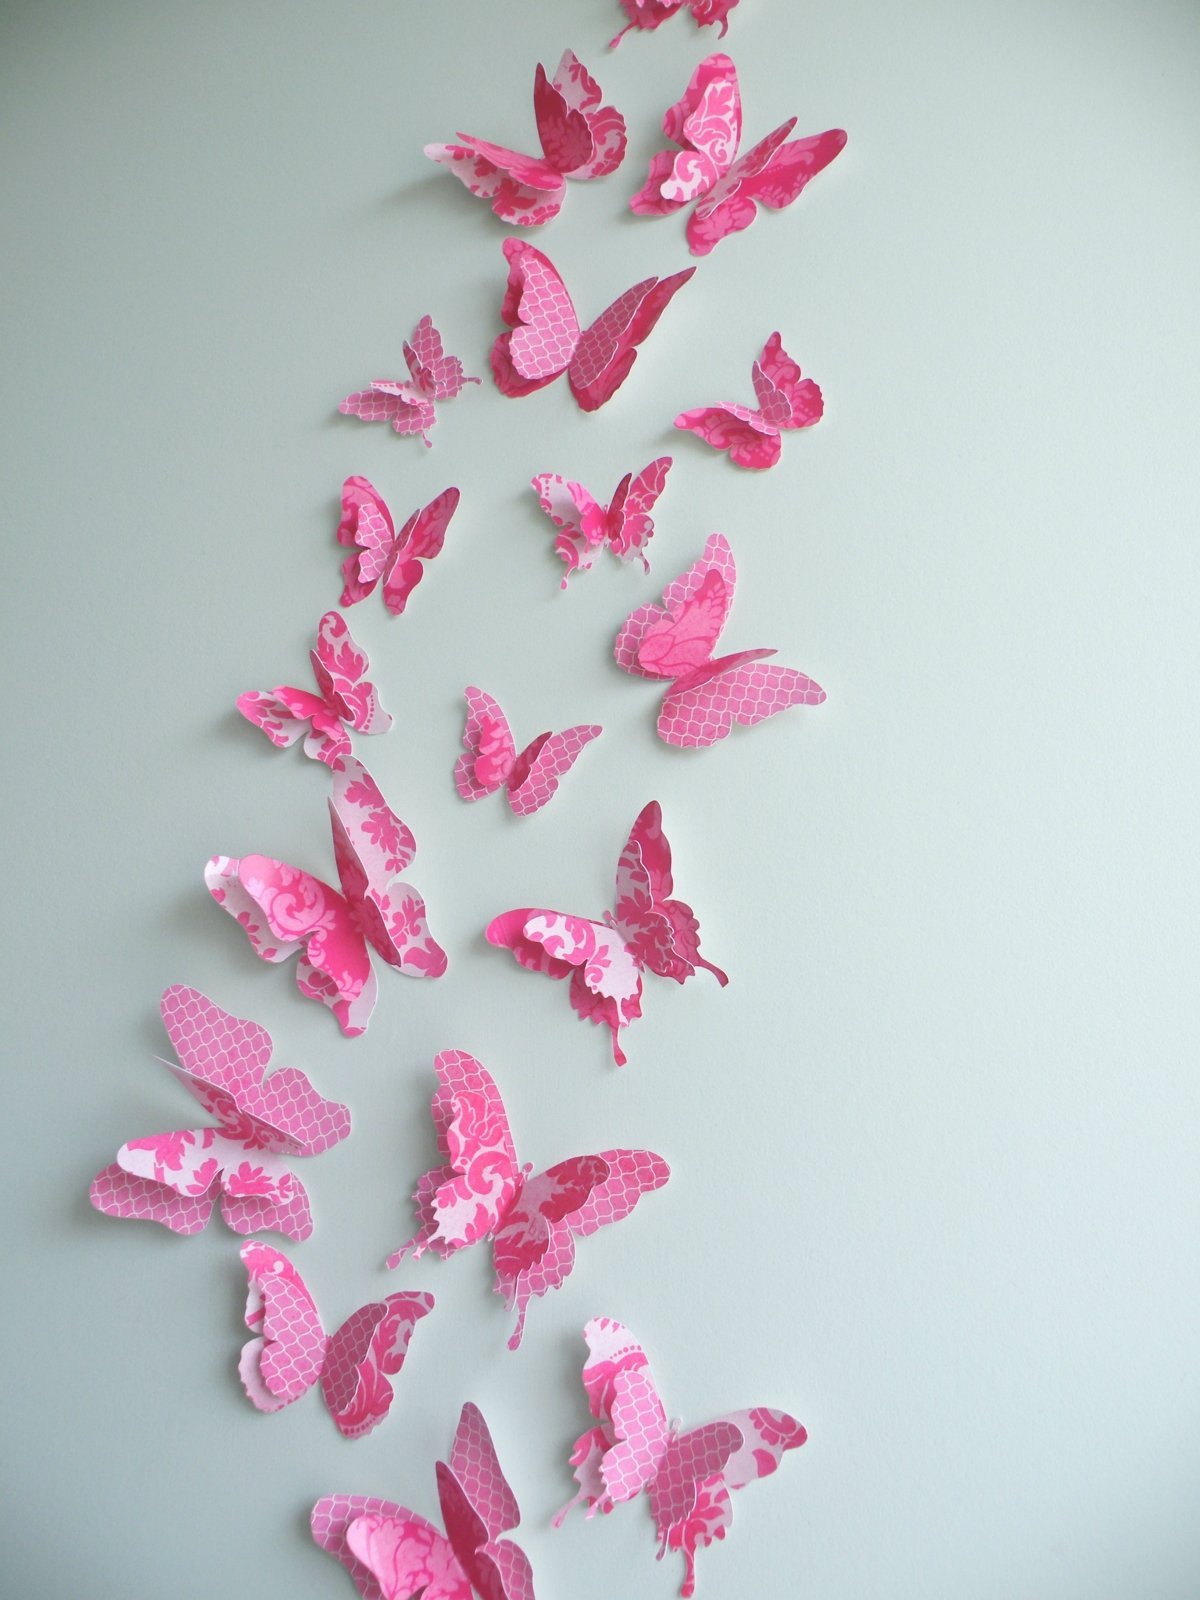 Бабочки клеит. Панно из бабочек. Панно из бумажных бабочек. Декор из бабочек на стену. Бабочки для декора.